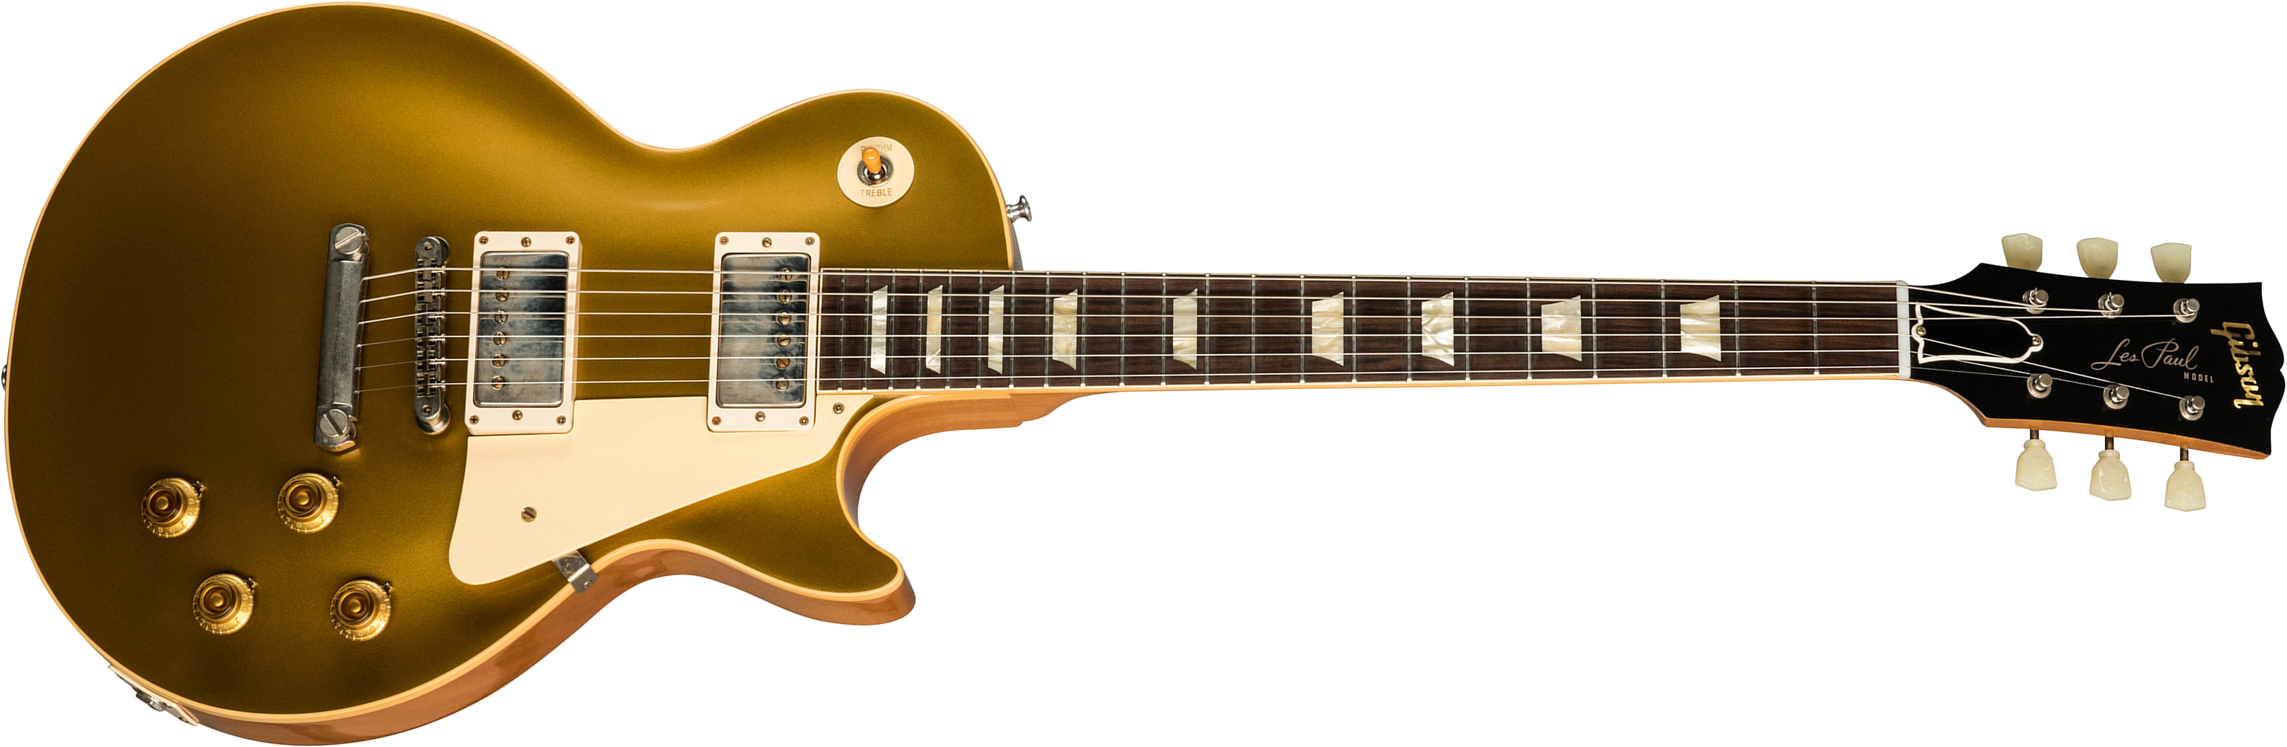 Gibson Custom Shop Les Paul Goldtop 1957 Reissue 2019 2h Ht Rw - Vos Double Gold - Single-Cut-E-Gitarre - Main picture